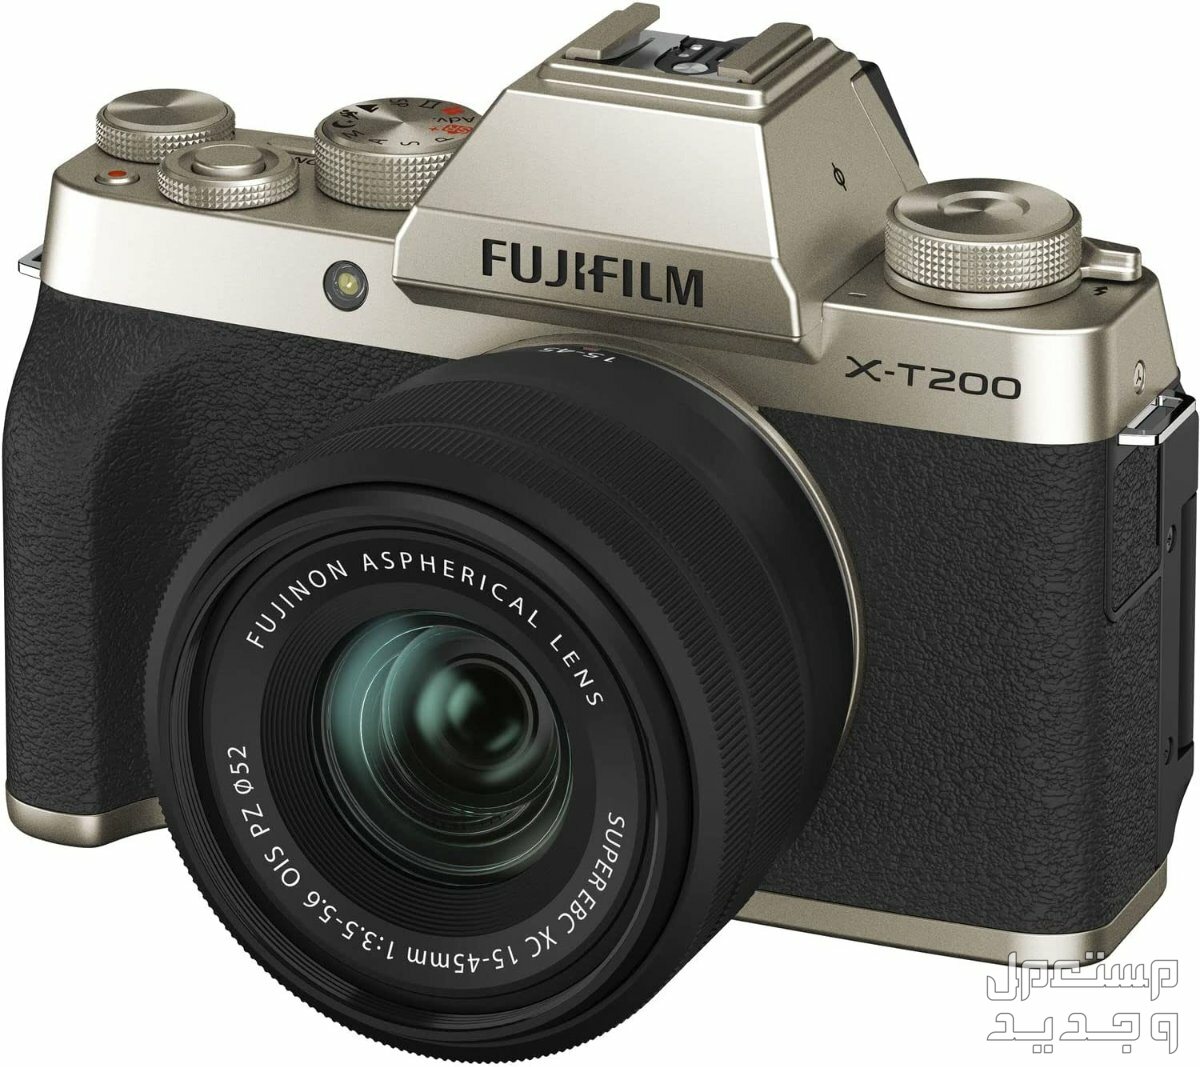 10 كاميرات تصوير ماركات عالمية بأسعار رخيصة في مصر كاميرا Fujifilm X-T200